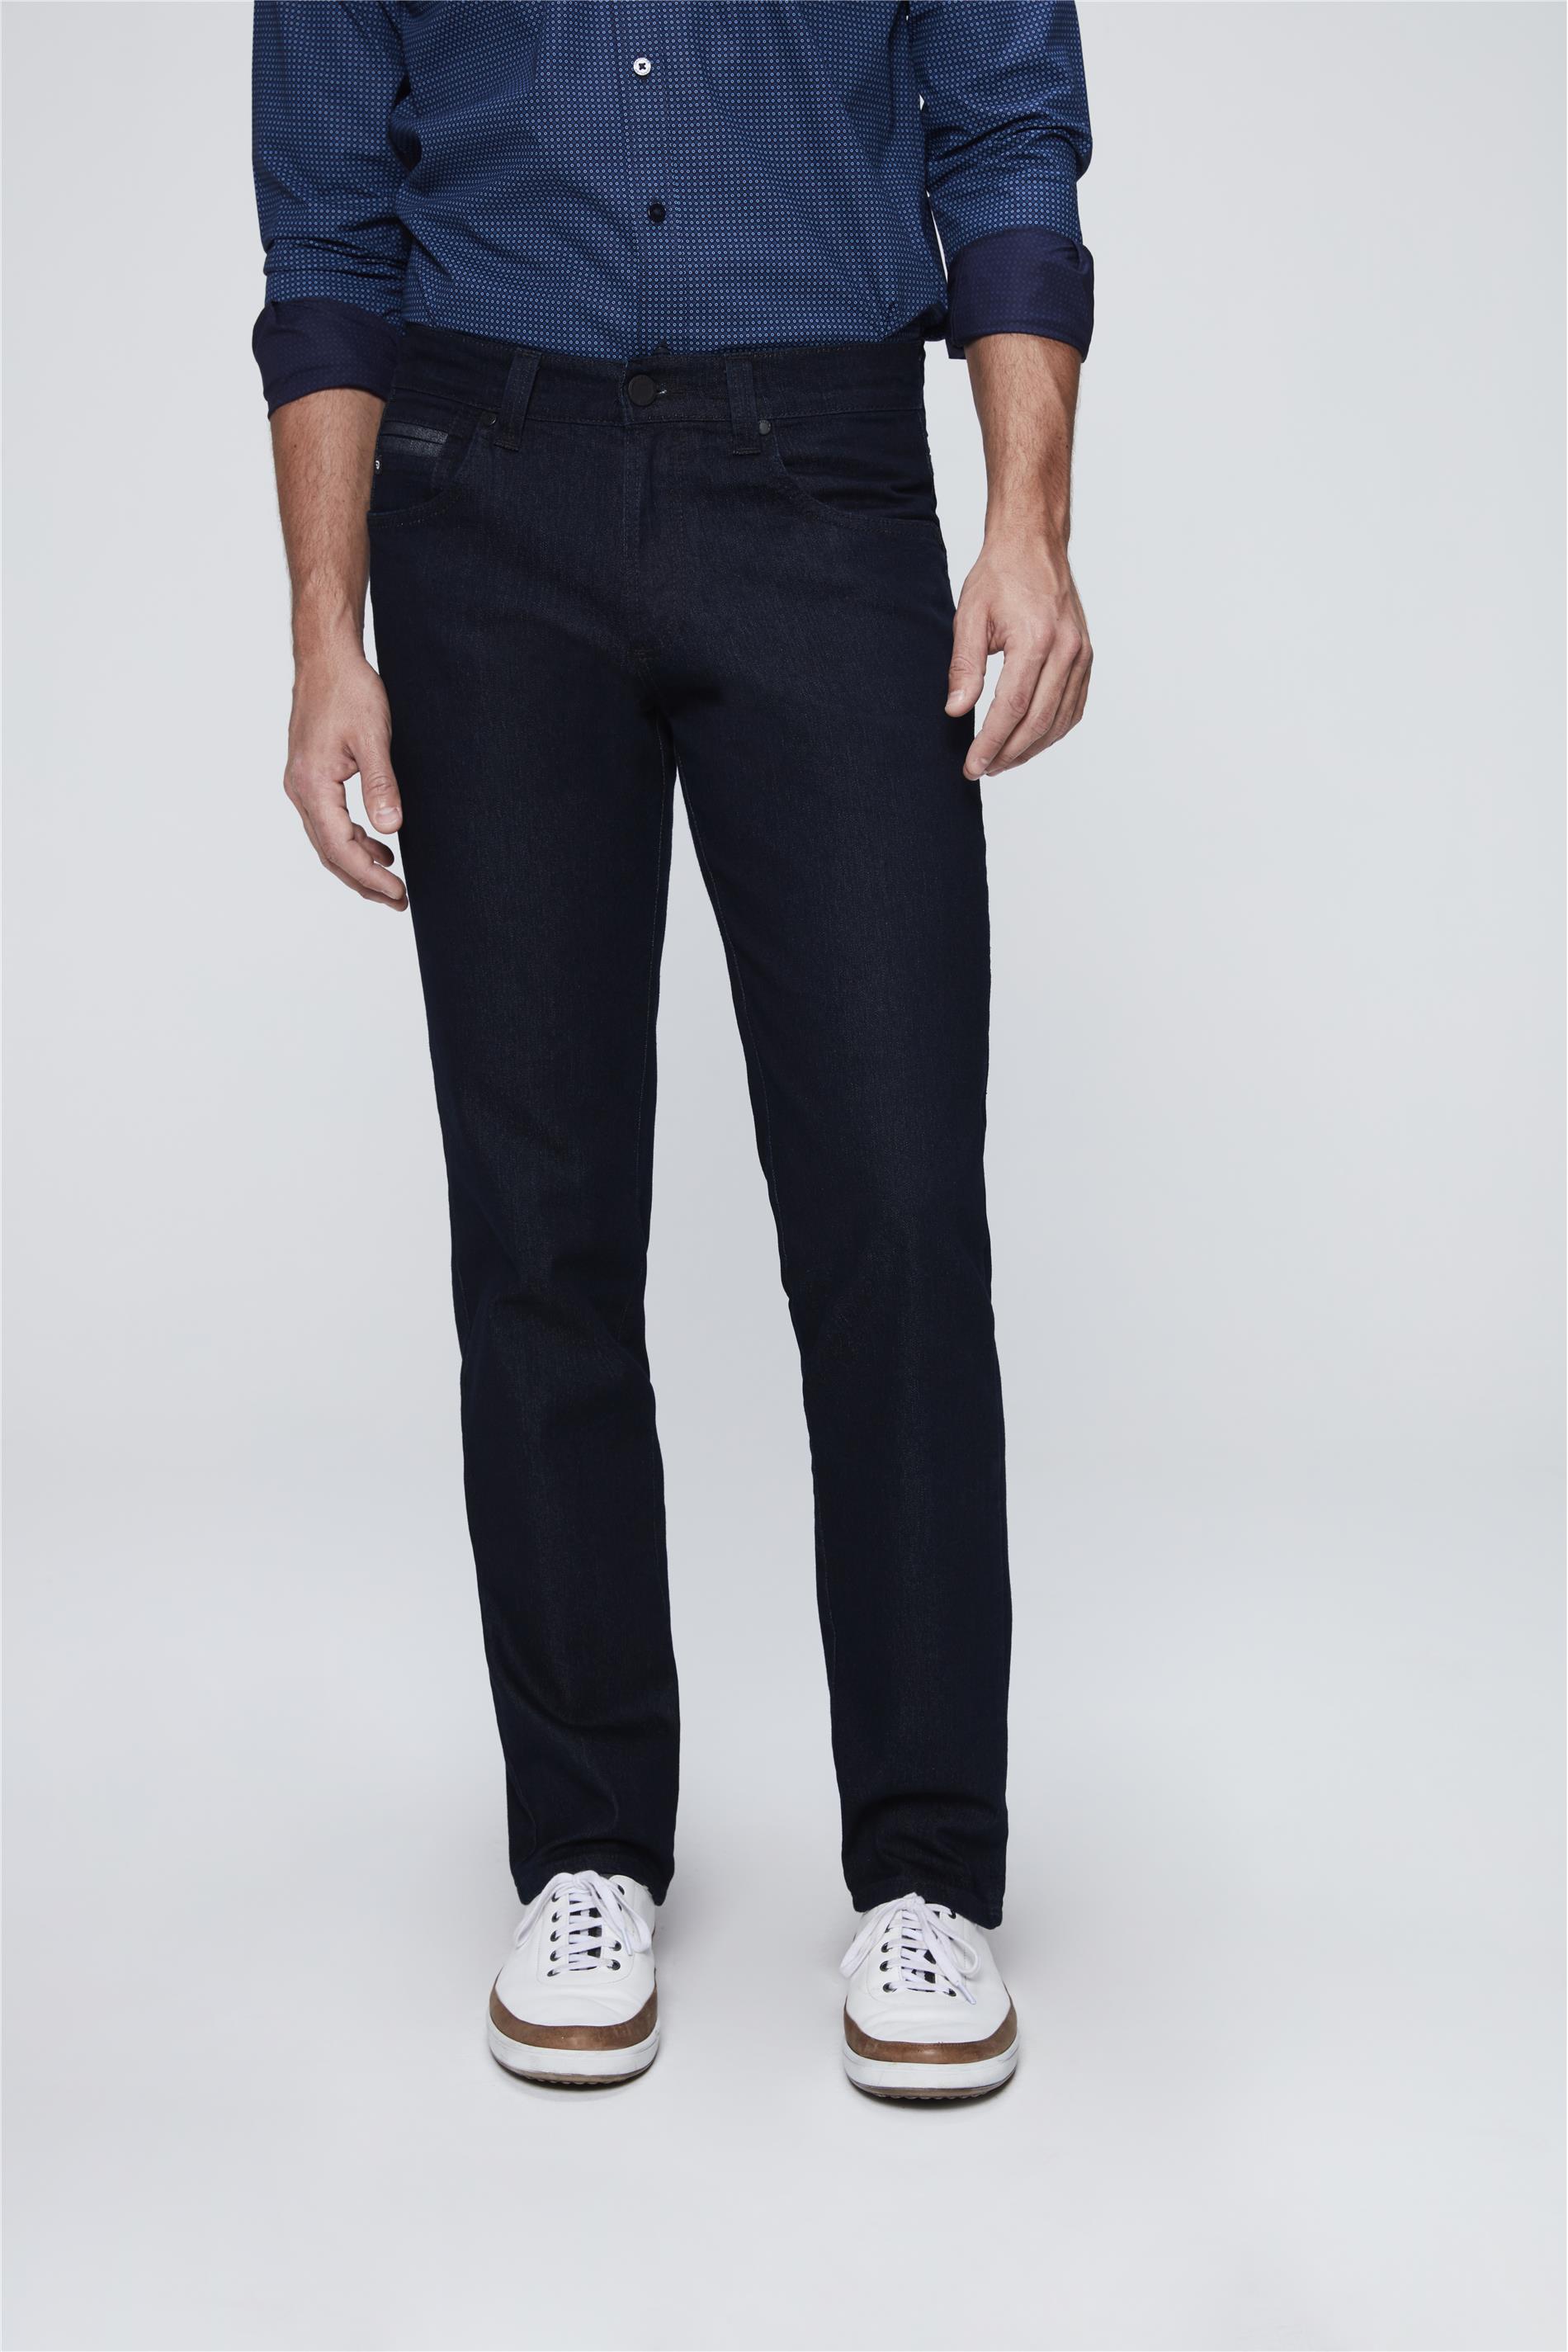 Calça Jeans Masculina Reta Cintura Alta e Rebites - Damyller - O Jeans da  Vida Real